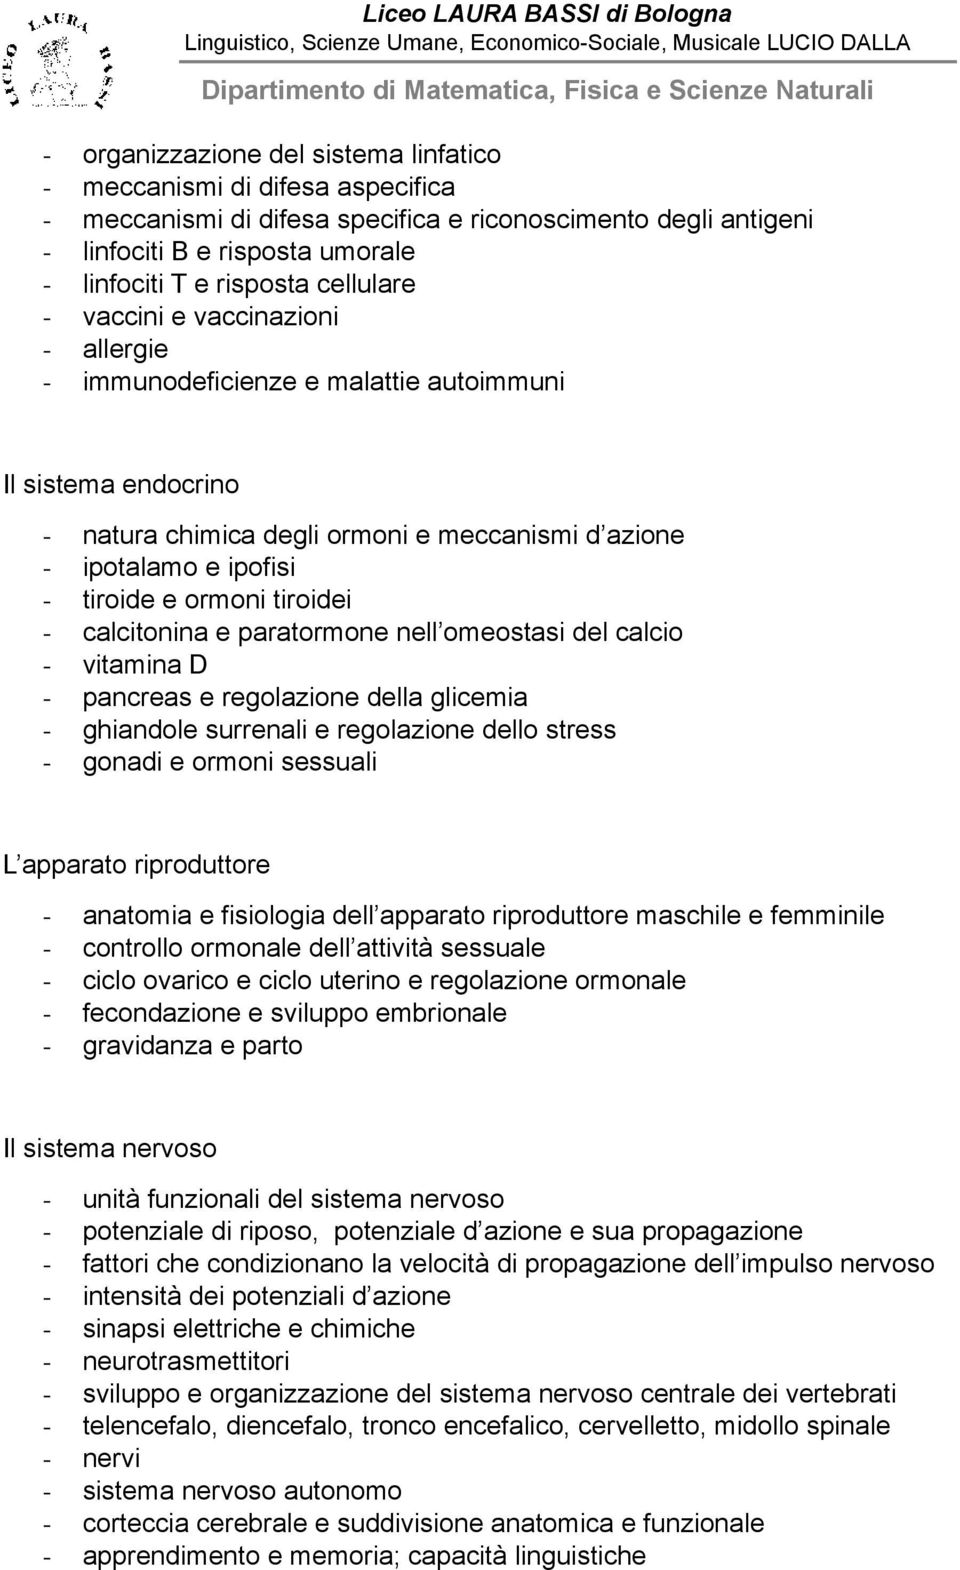 ormoni tiroidei - calcitonina e paratormone nell omeostasi del calcio - vitamina D - pancreas e regolazione della glicemia - ghiandole surrenali e regolazione dello stress - gonadi e ormoni sessuali